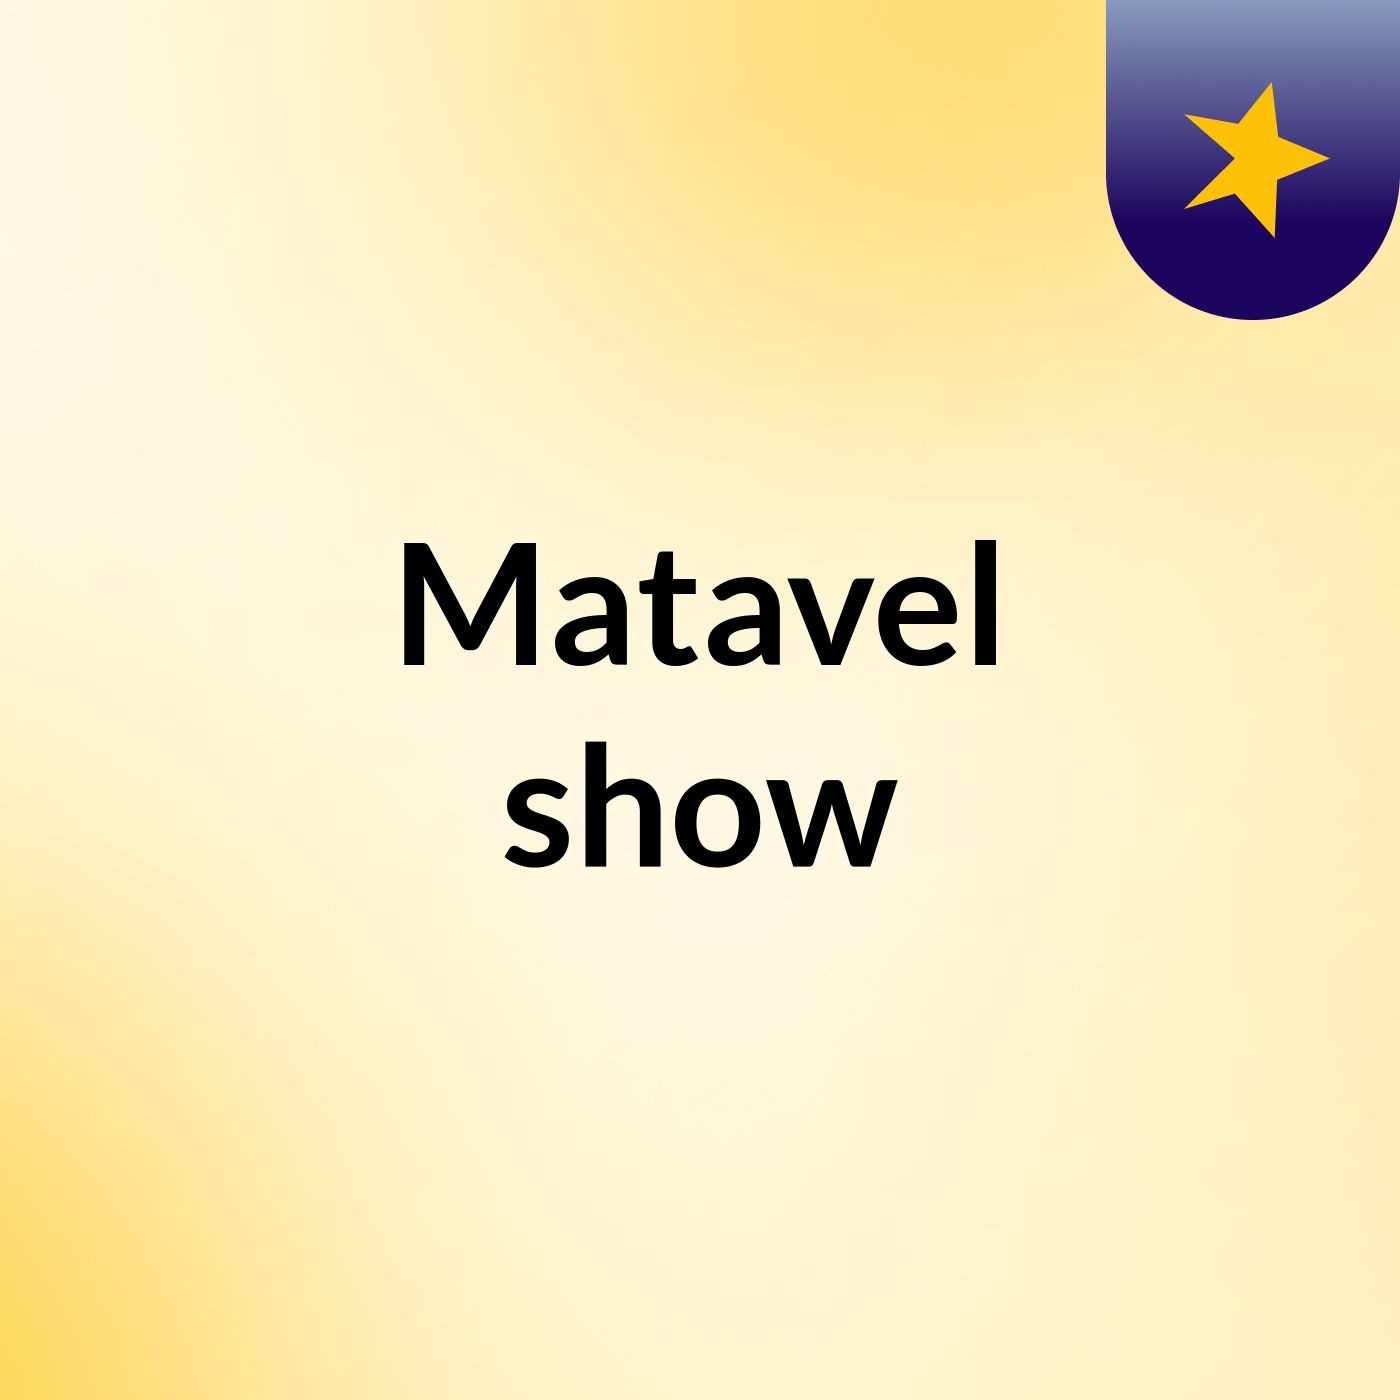 Matavel show